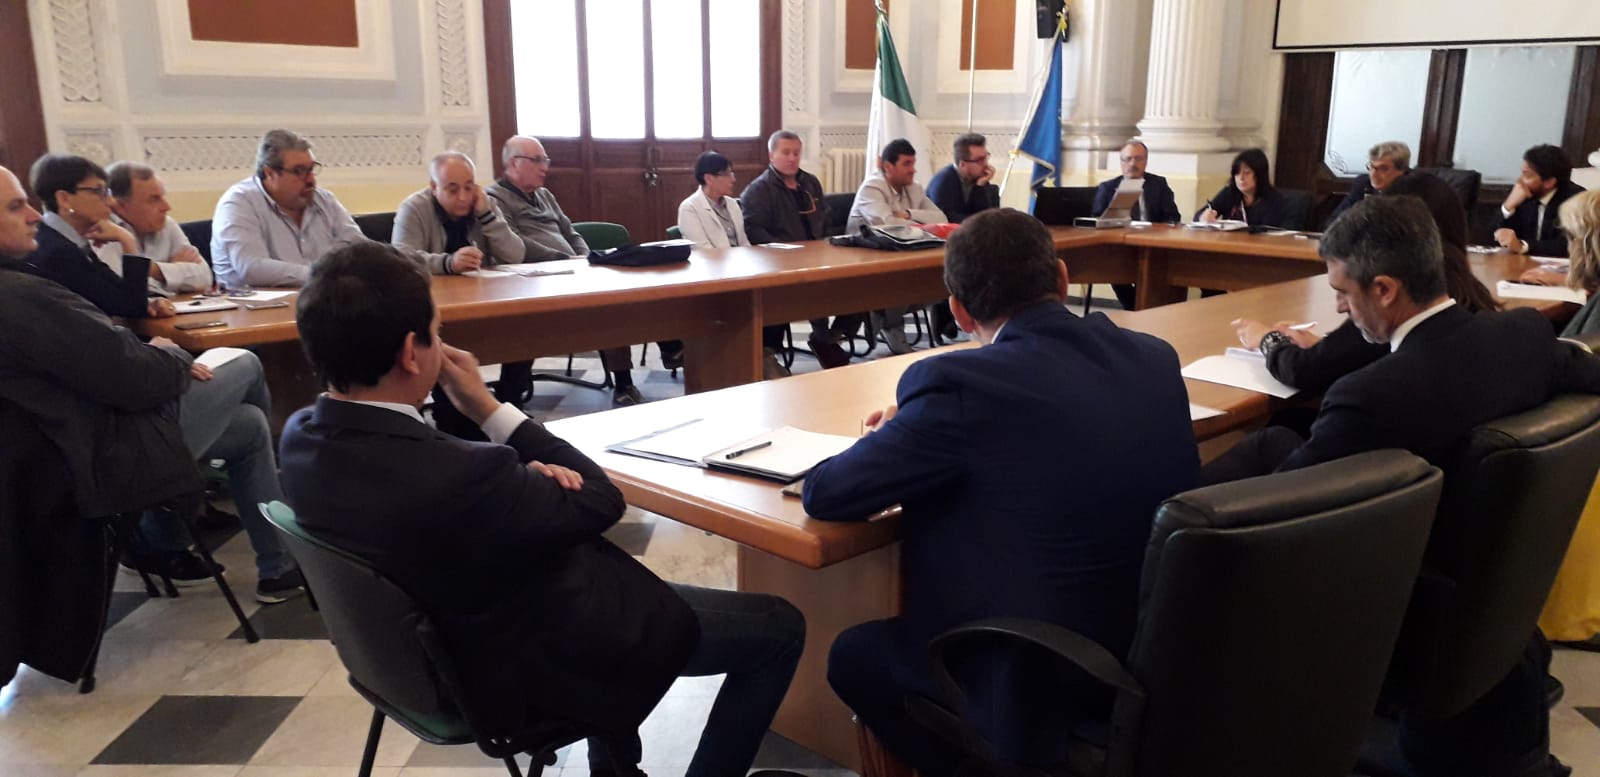 Benevento| Cmr, riunione interlocutoria in Prefettura